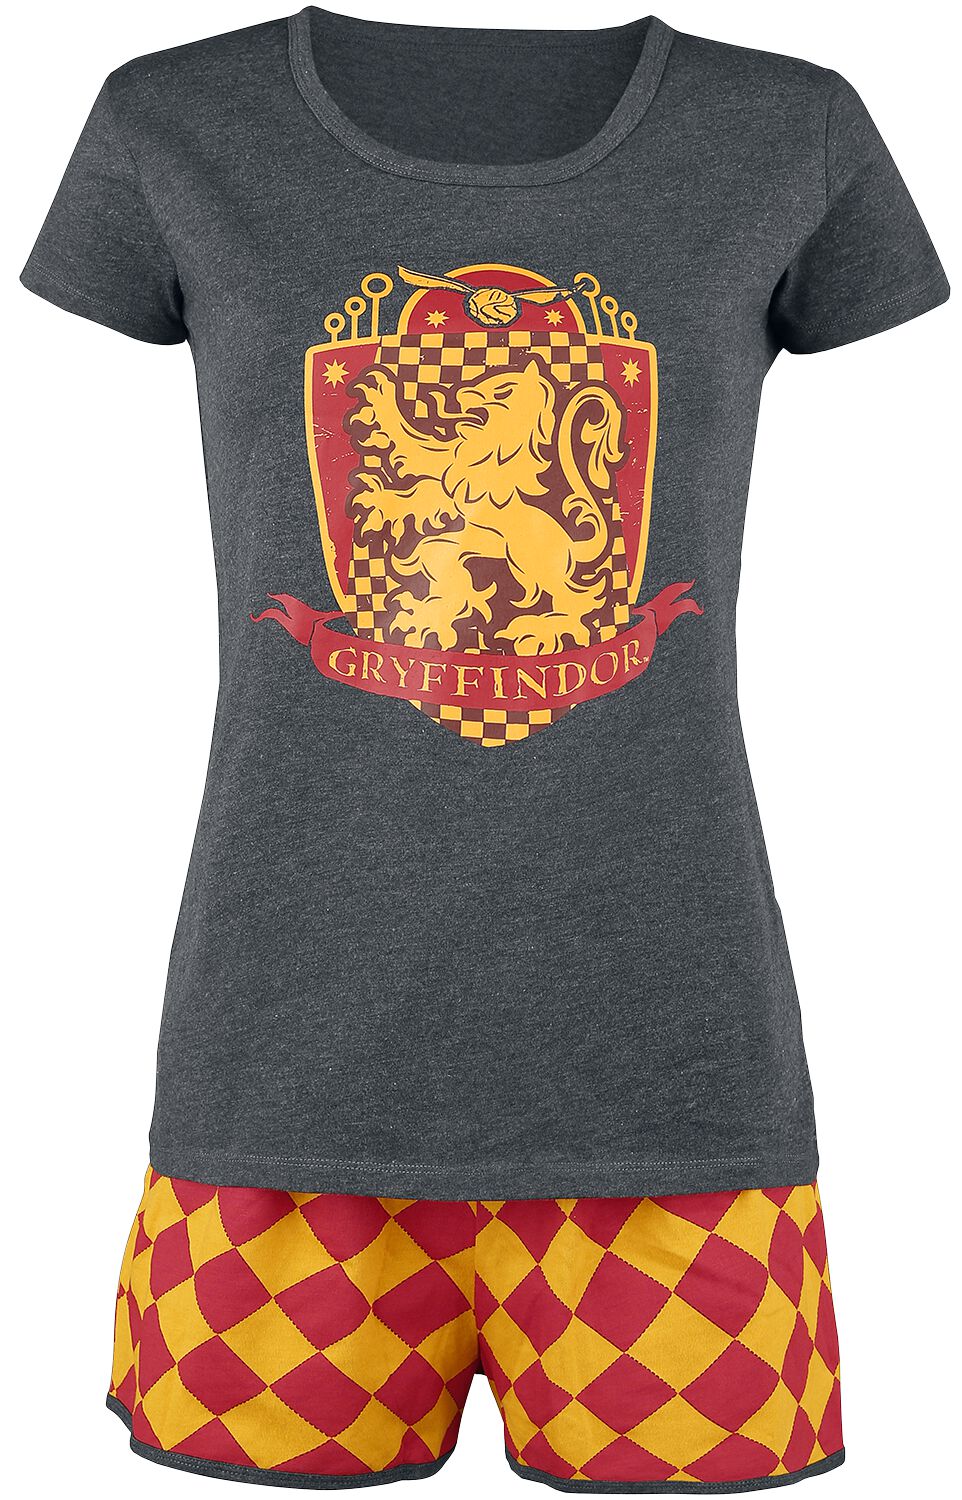 Harry Potter Schlafanzug - Gryffindor Quidditch - XS bis 5XL - für Damen - Größe 5XL - grau/rot/gelb  - EMP exklusives Merchandise!